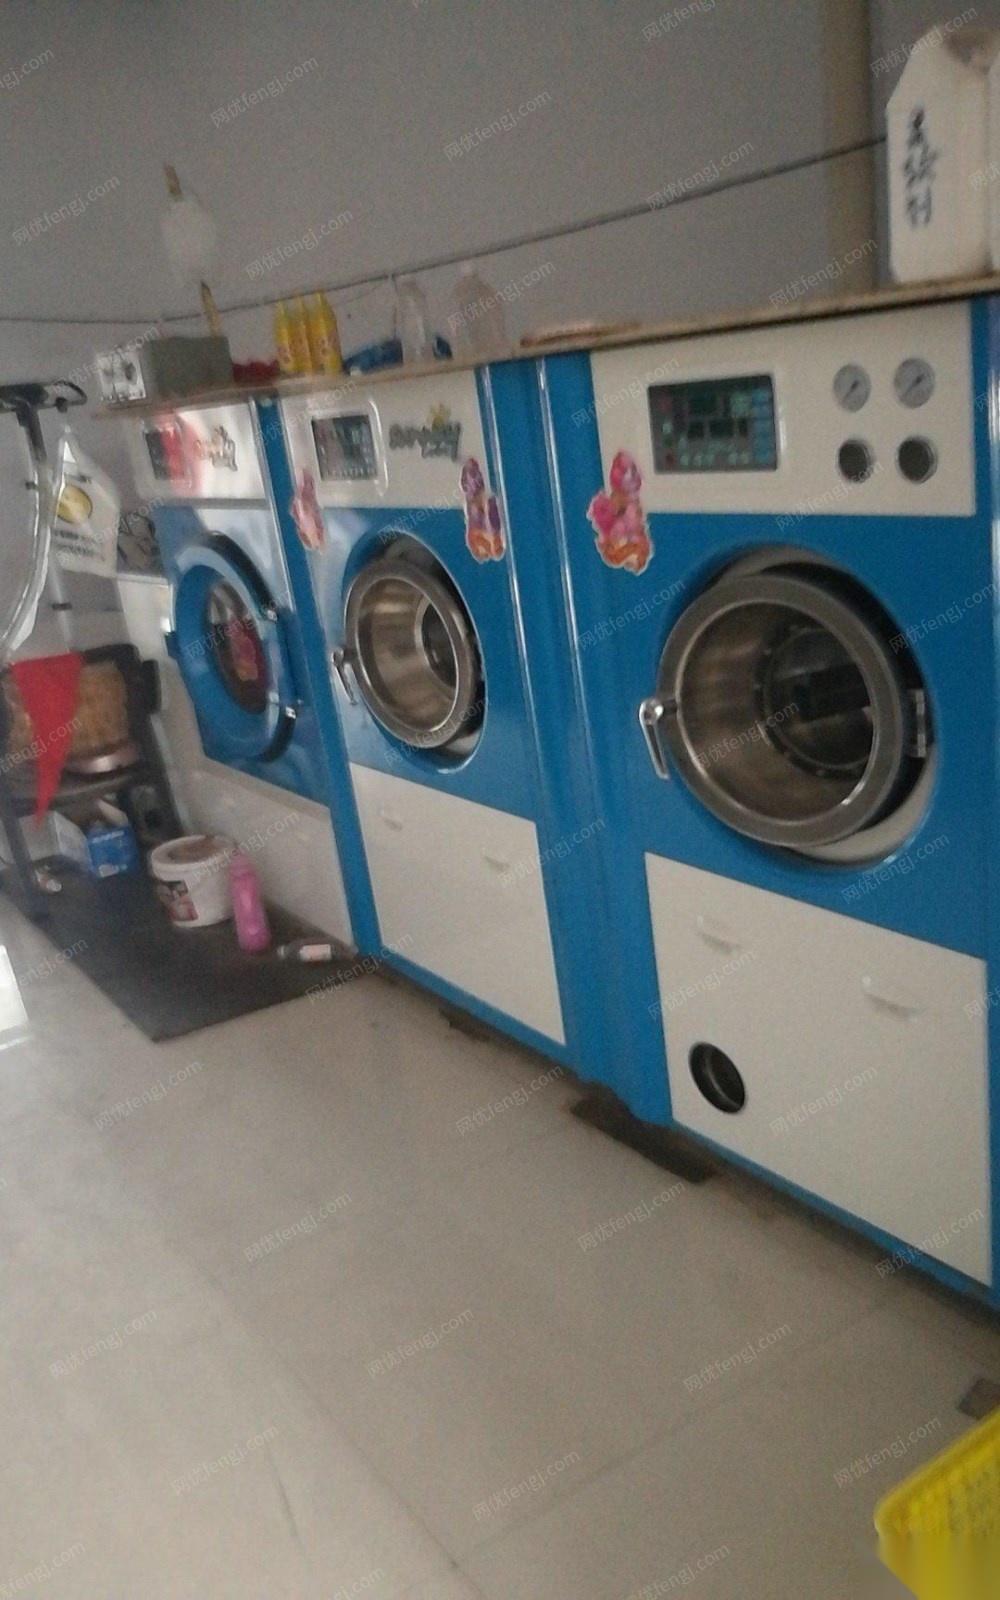 16年9成新一套上海机干洗设备低价处理 70000元.13公斤干洗.13公斤水洗.13公斤烘干.等整套